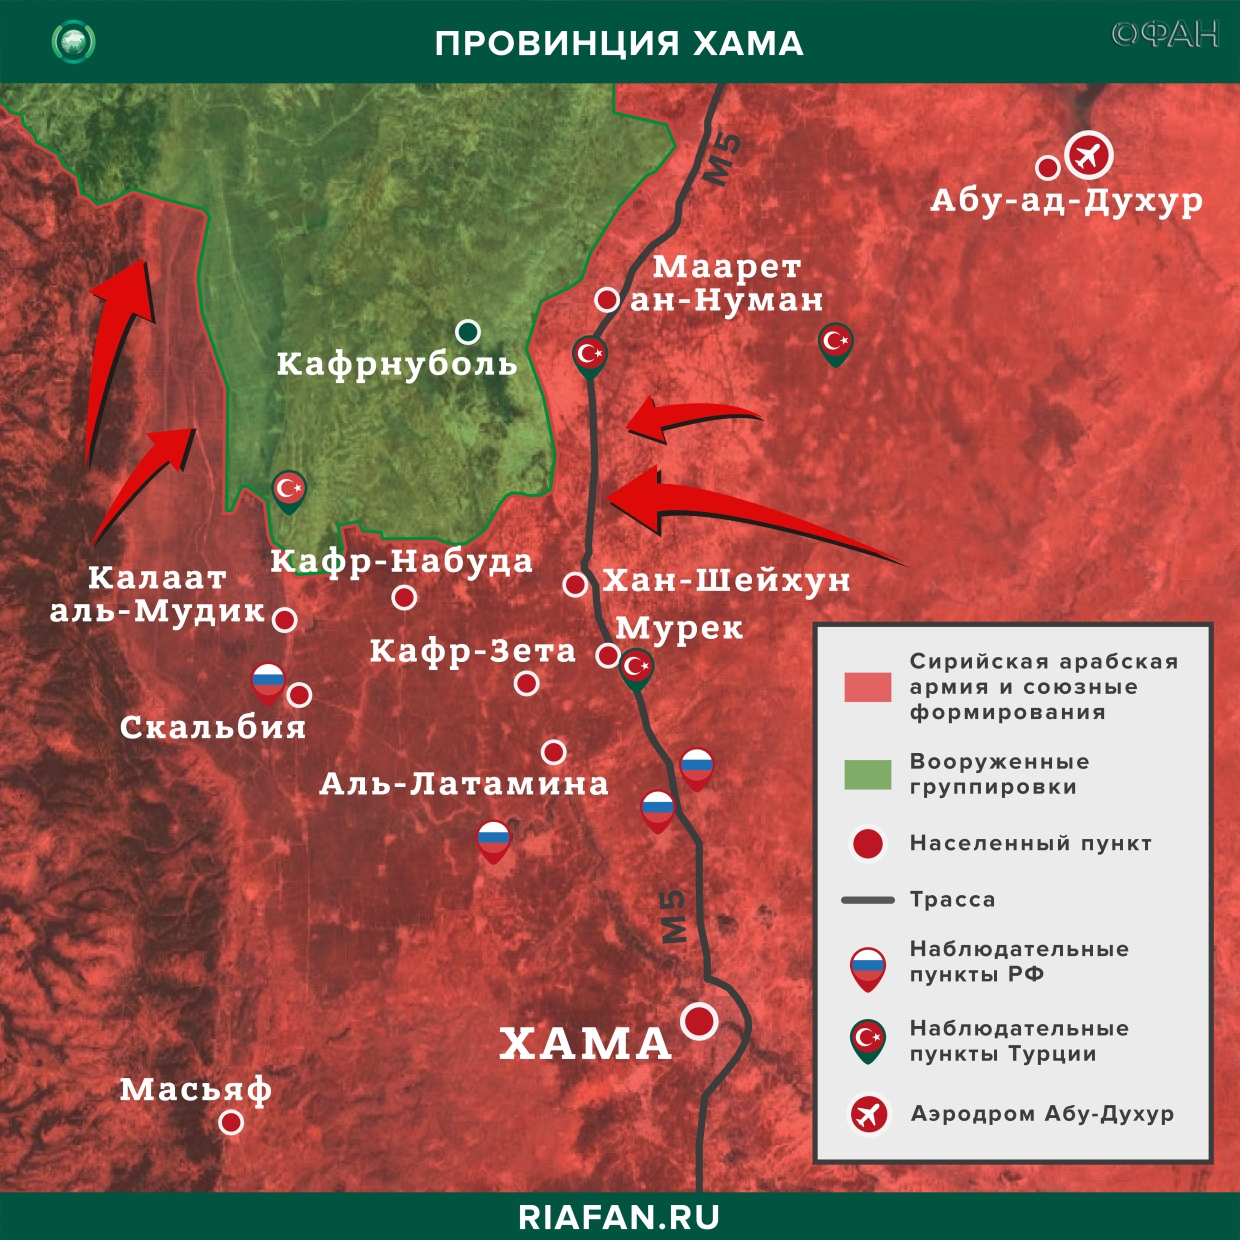 Сирия итоги за сутки на 21 февраля 06.00: ВКС РФ предотвратили прорыв боевиков в Идлибе, США препятствовали проезду патруля РФ в Хасаке